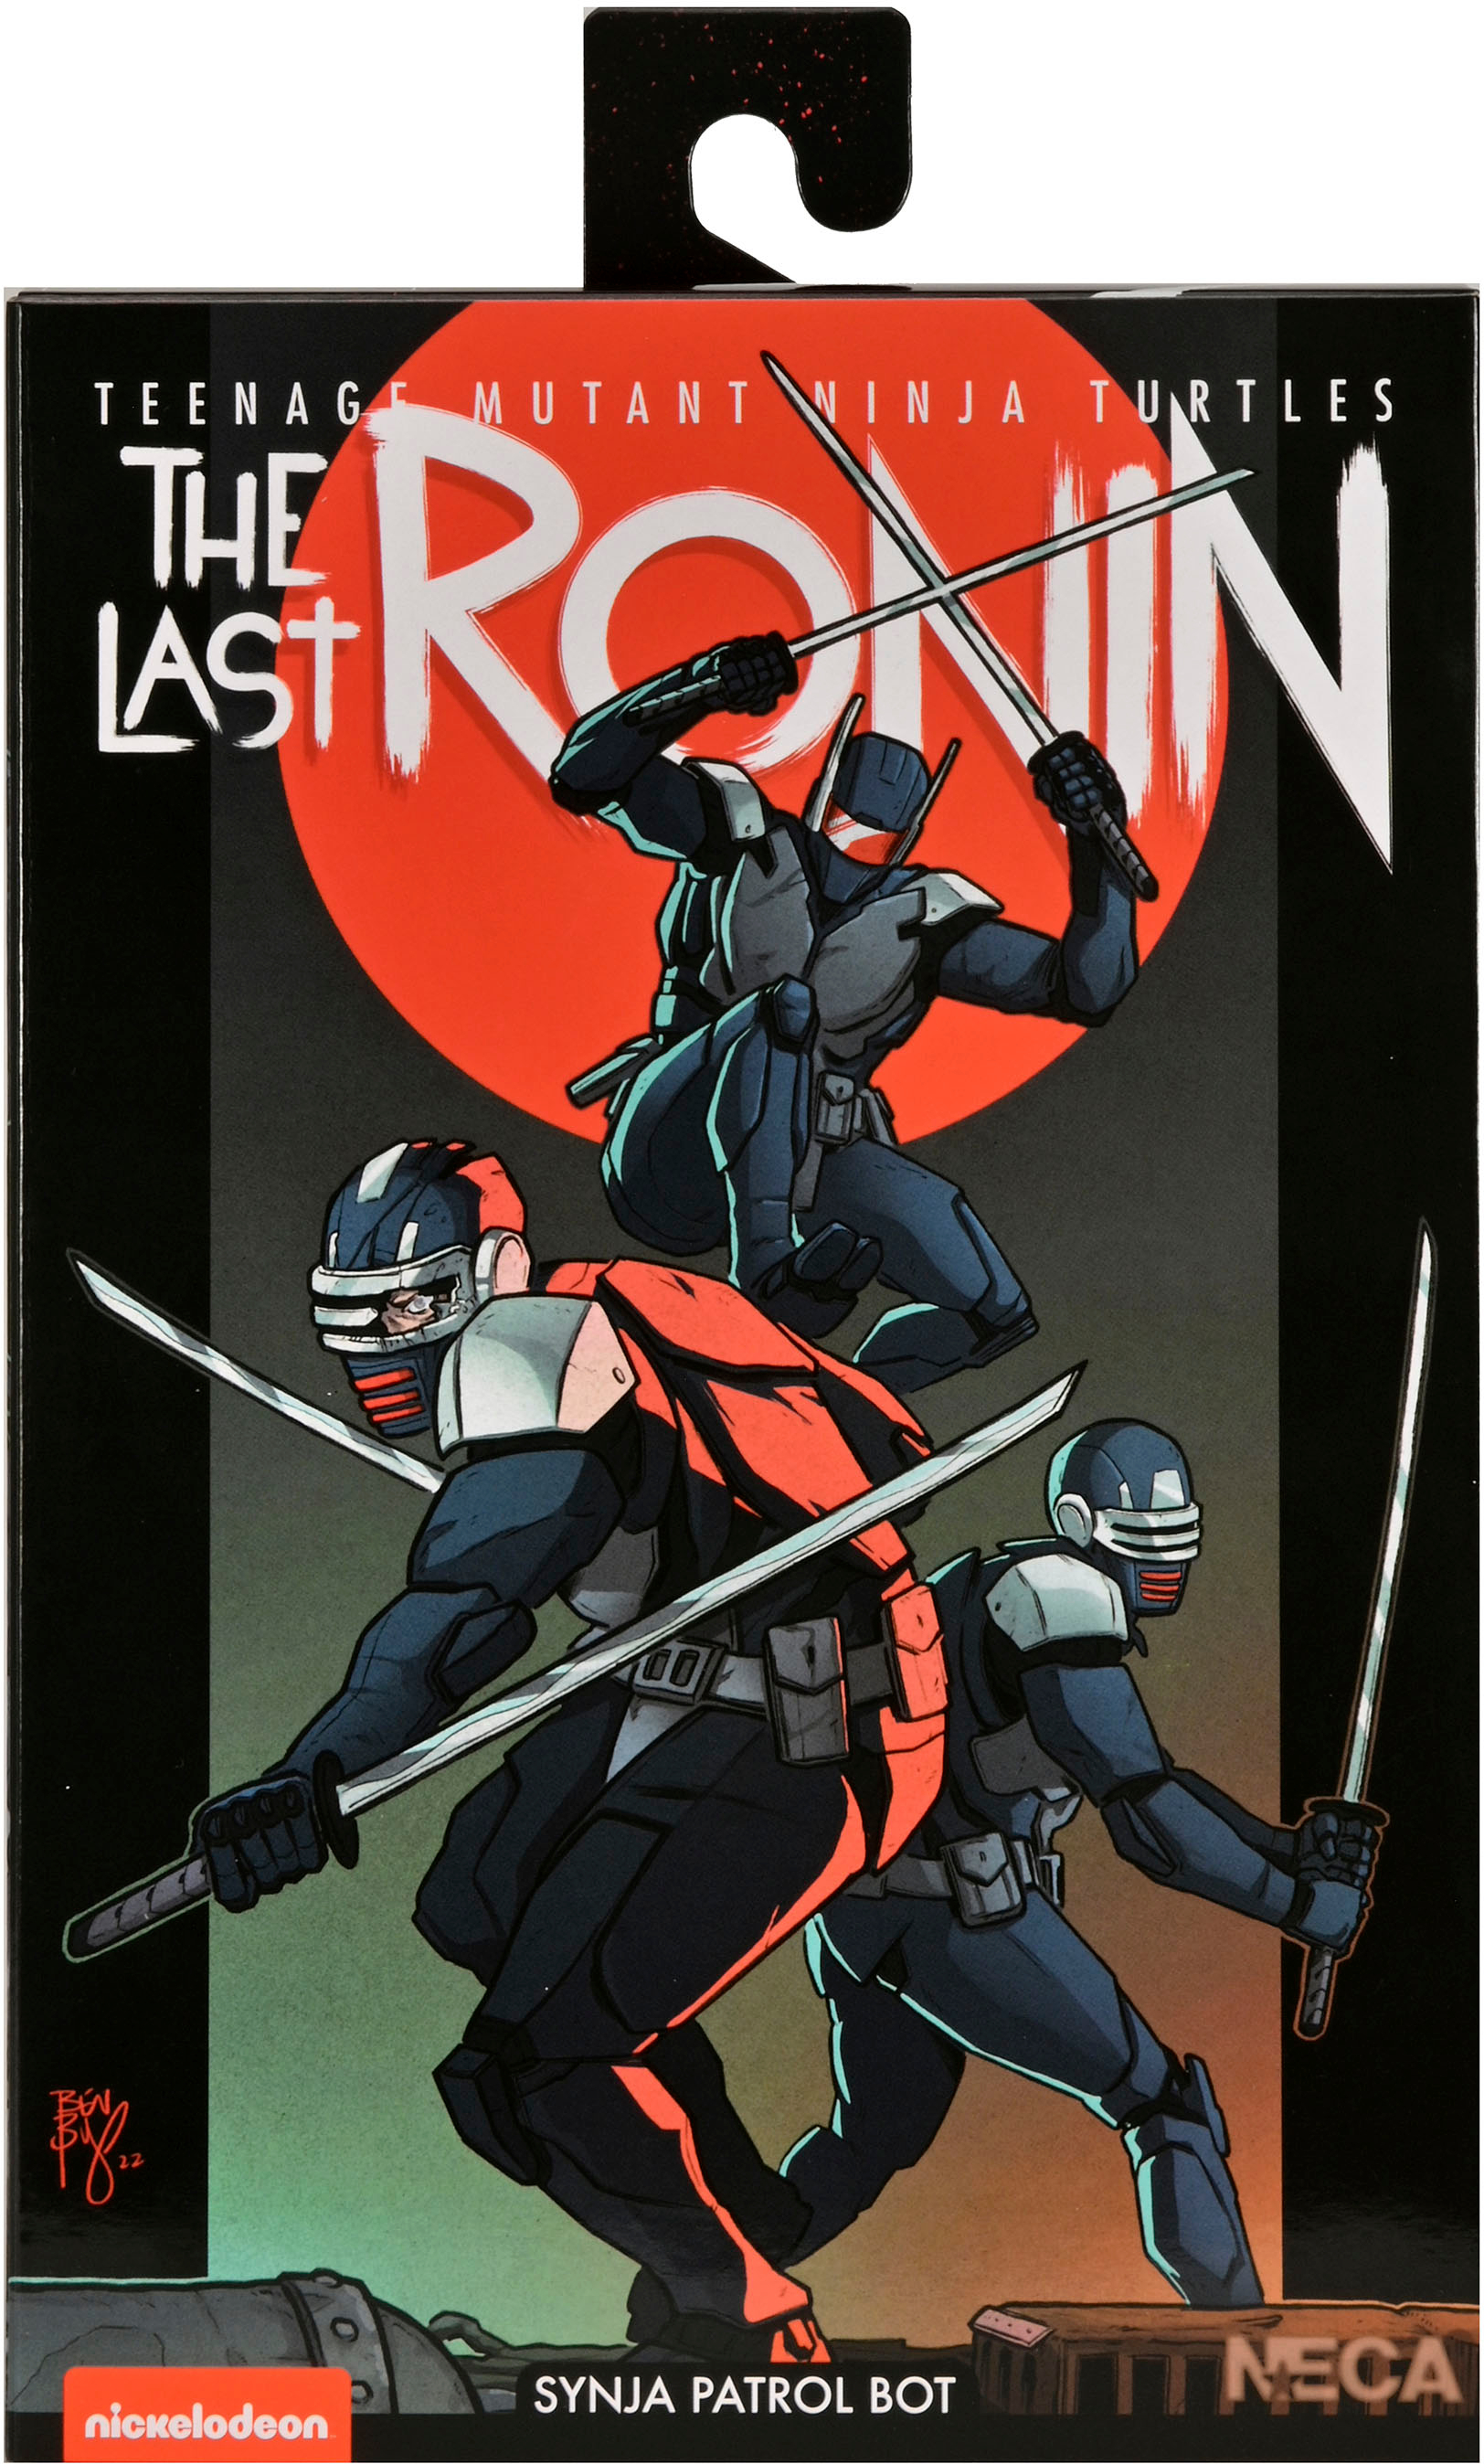 Left View: NECA - Teenage Mutant Ninja Turtles 7" The Last Ronin - Synja Patrol Bot